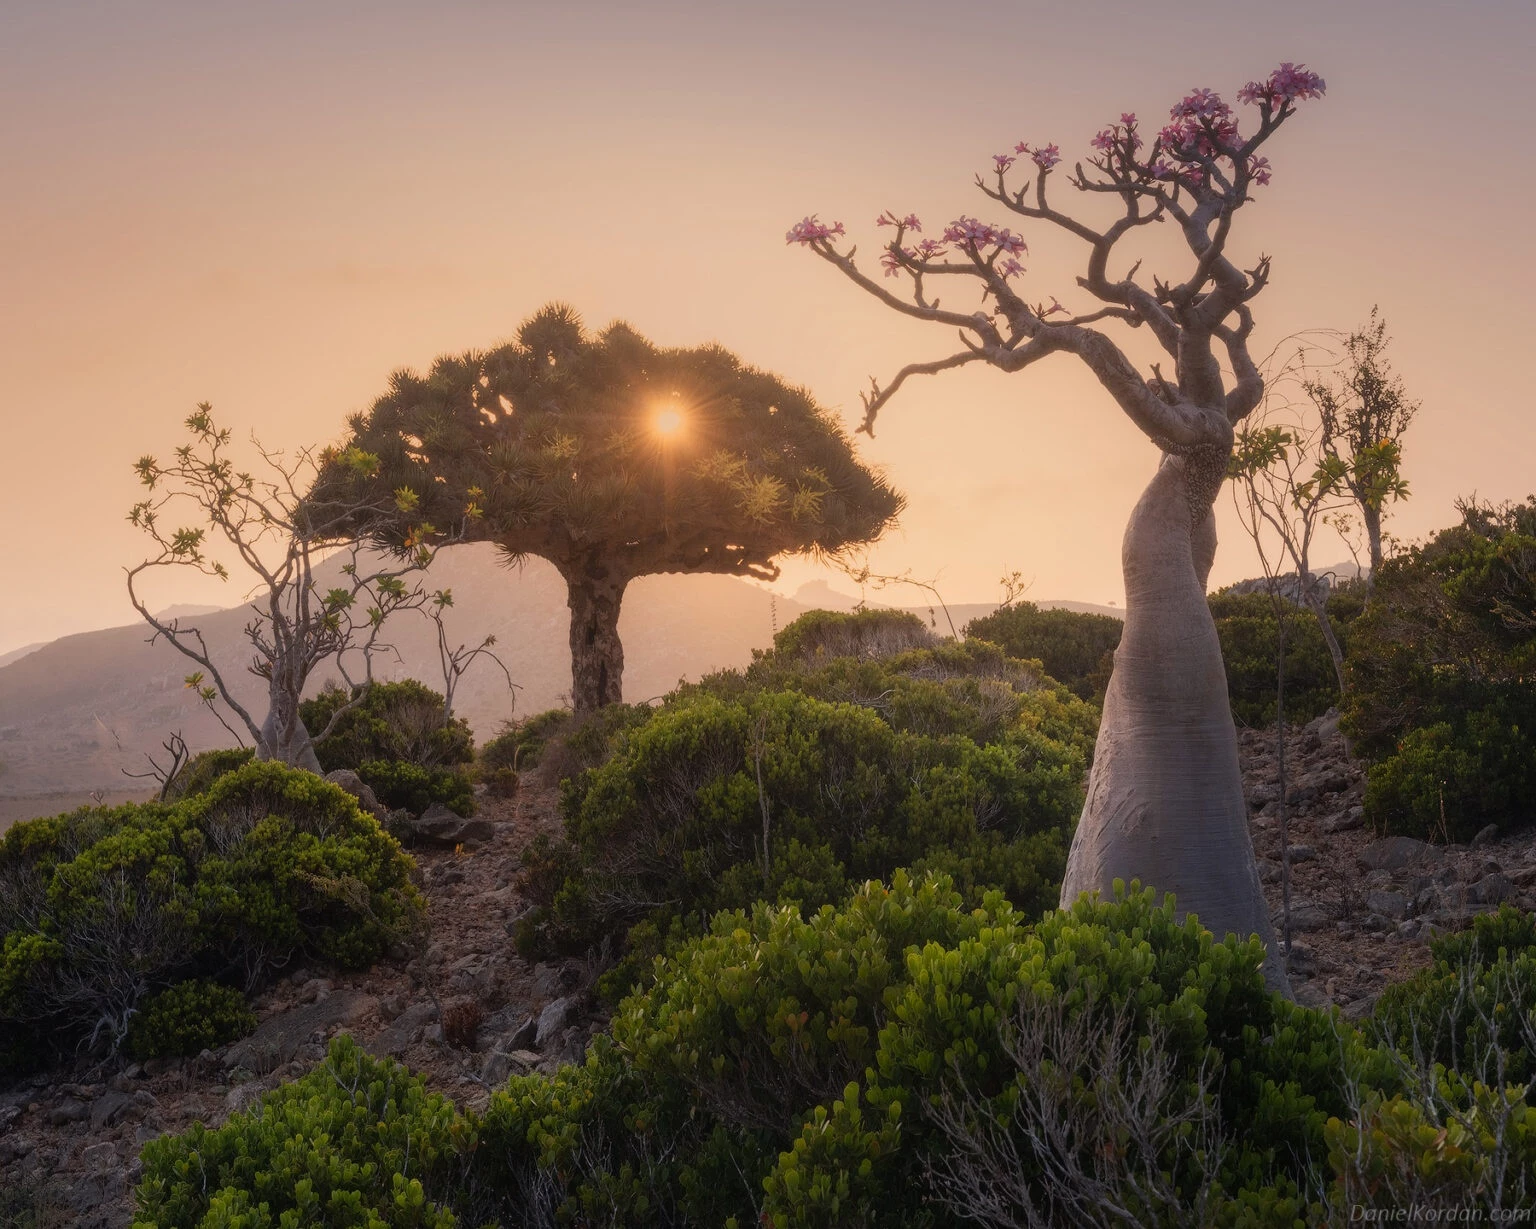 Cây máu rồng được coi là biểu tượng của đảo Socotra. Tuổi thọ của cây có thể lên tới hàng trăm năm nhưng loài này đang đứng trước nguy cơ biến mất vĩnh viễn. Bởi, Socotra ngày càng khô hạn, mưa mùa thất thường và ít đi do biến đổi khí hậu. Các nhà khoa học dự báo đến năm 2080, 45% môi trường sống lý tưởng của cây máu rồng có thể mất đi.